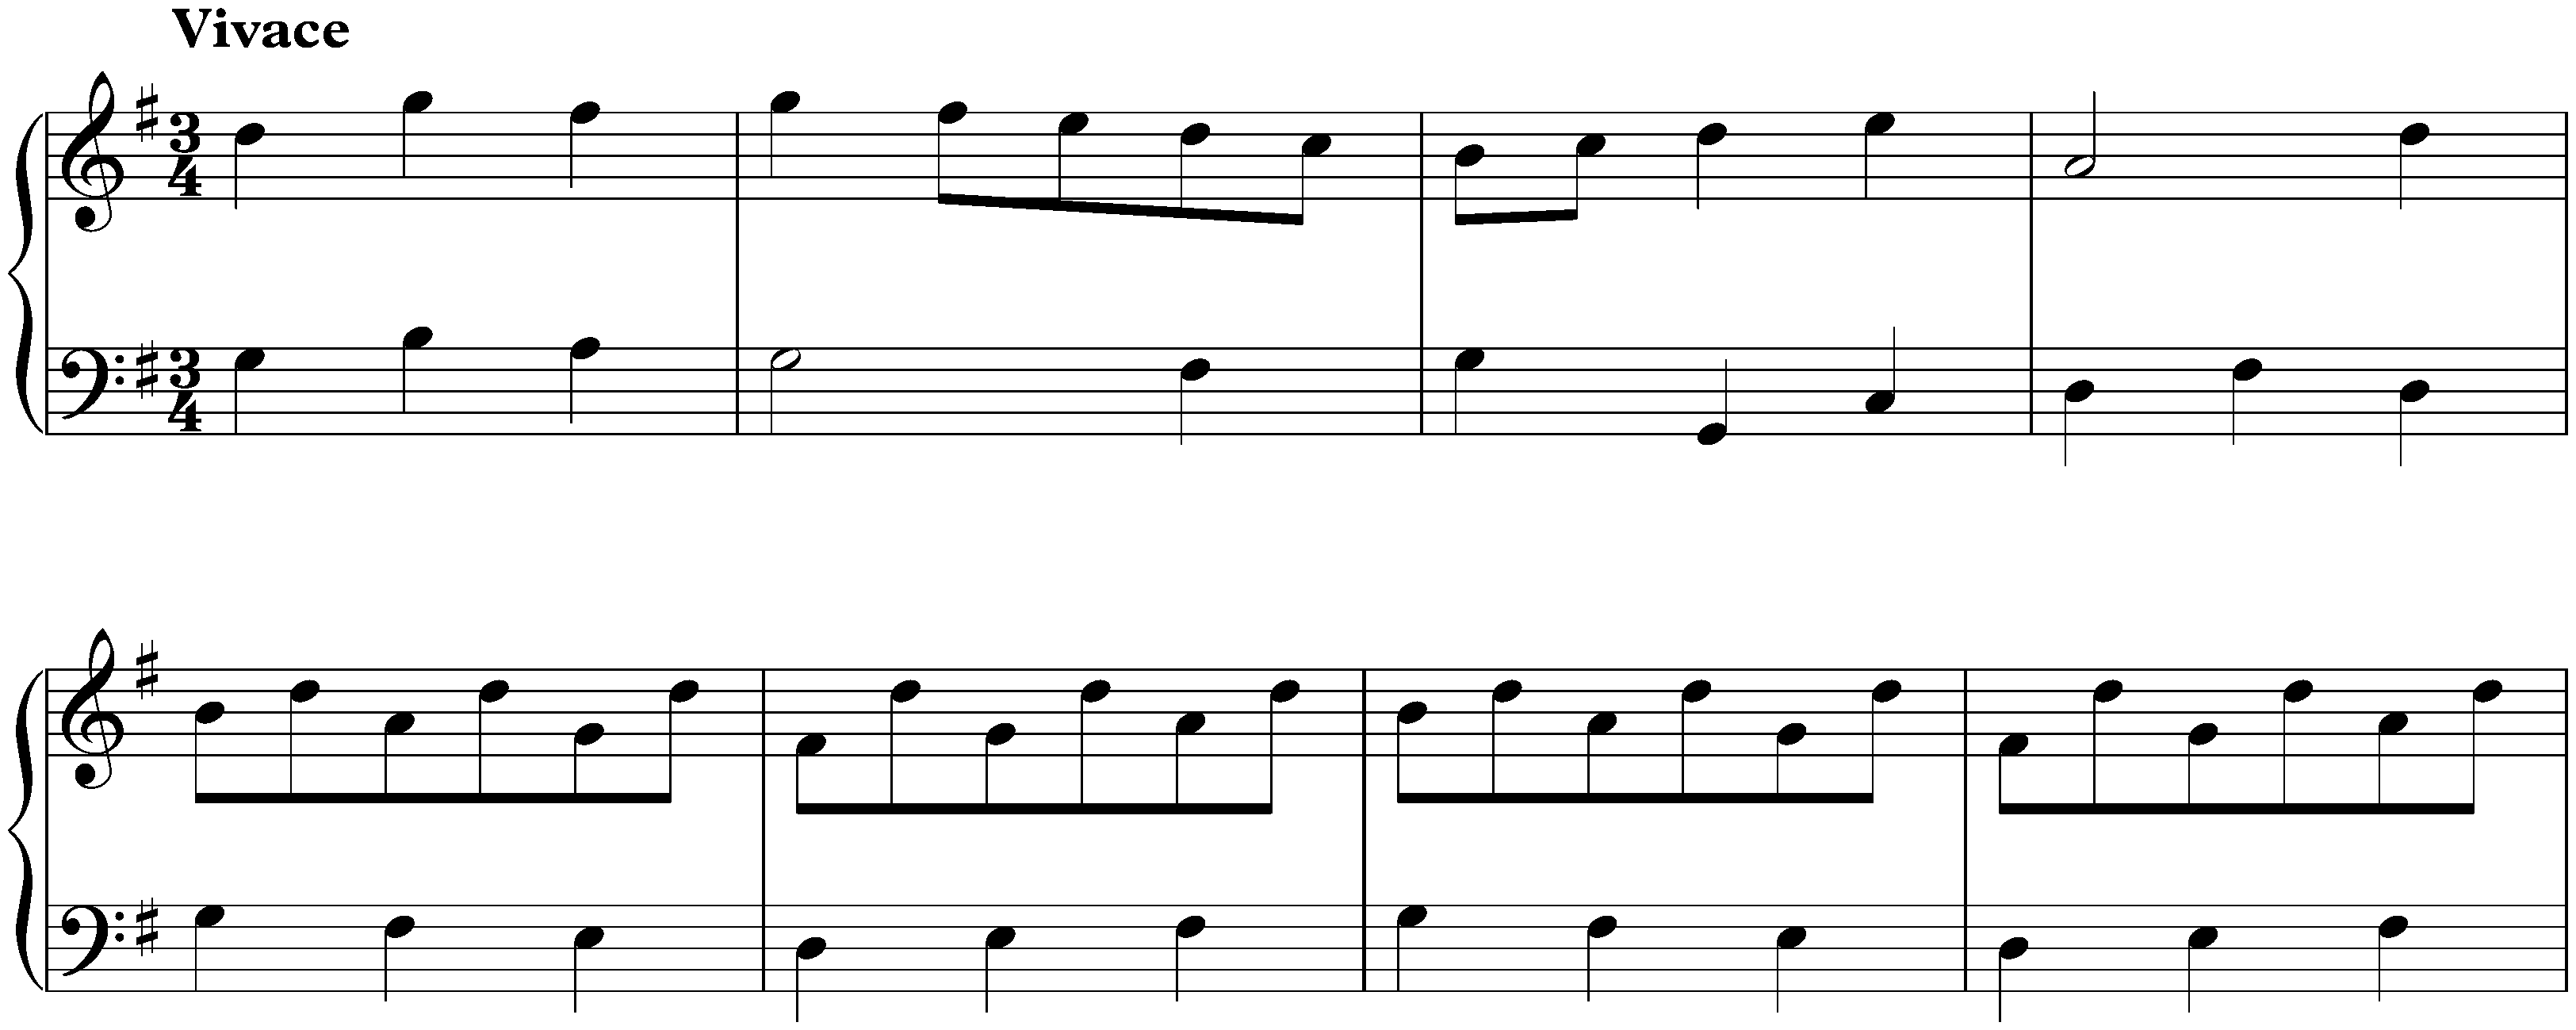 Concerto in G major, BWV Anh. 152; 4. Vivace